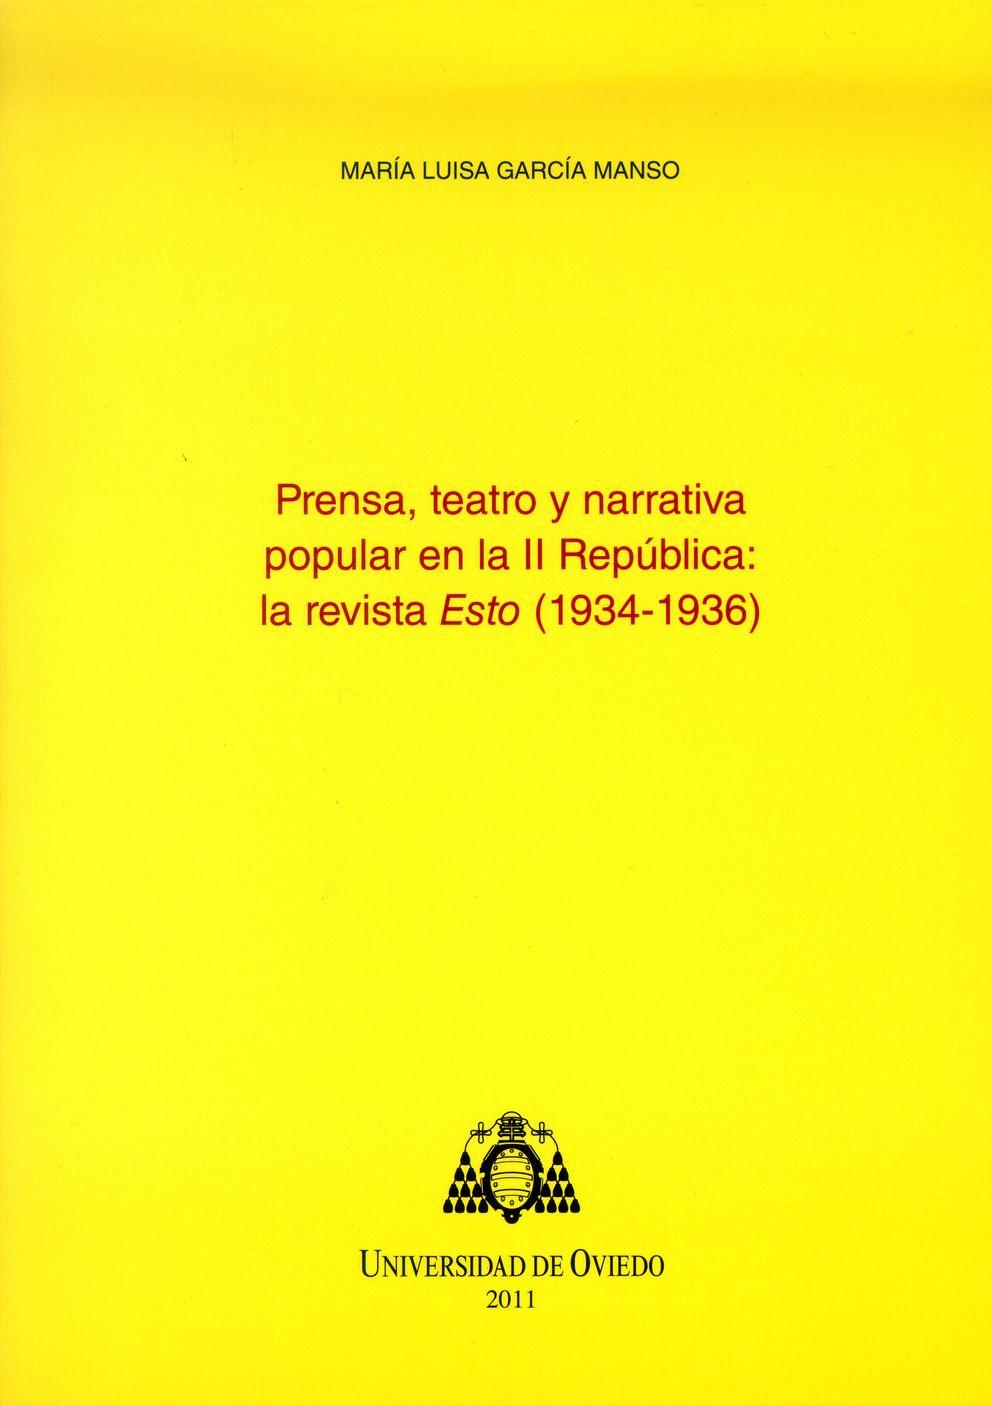 Cover "Prensa, teatro y narrativa popular en la II República"